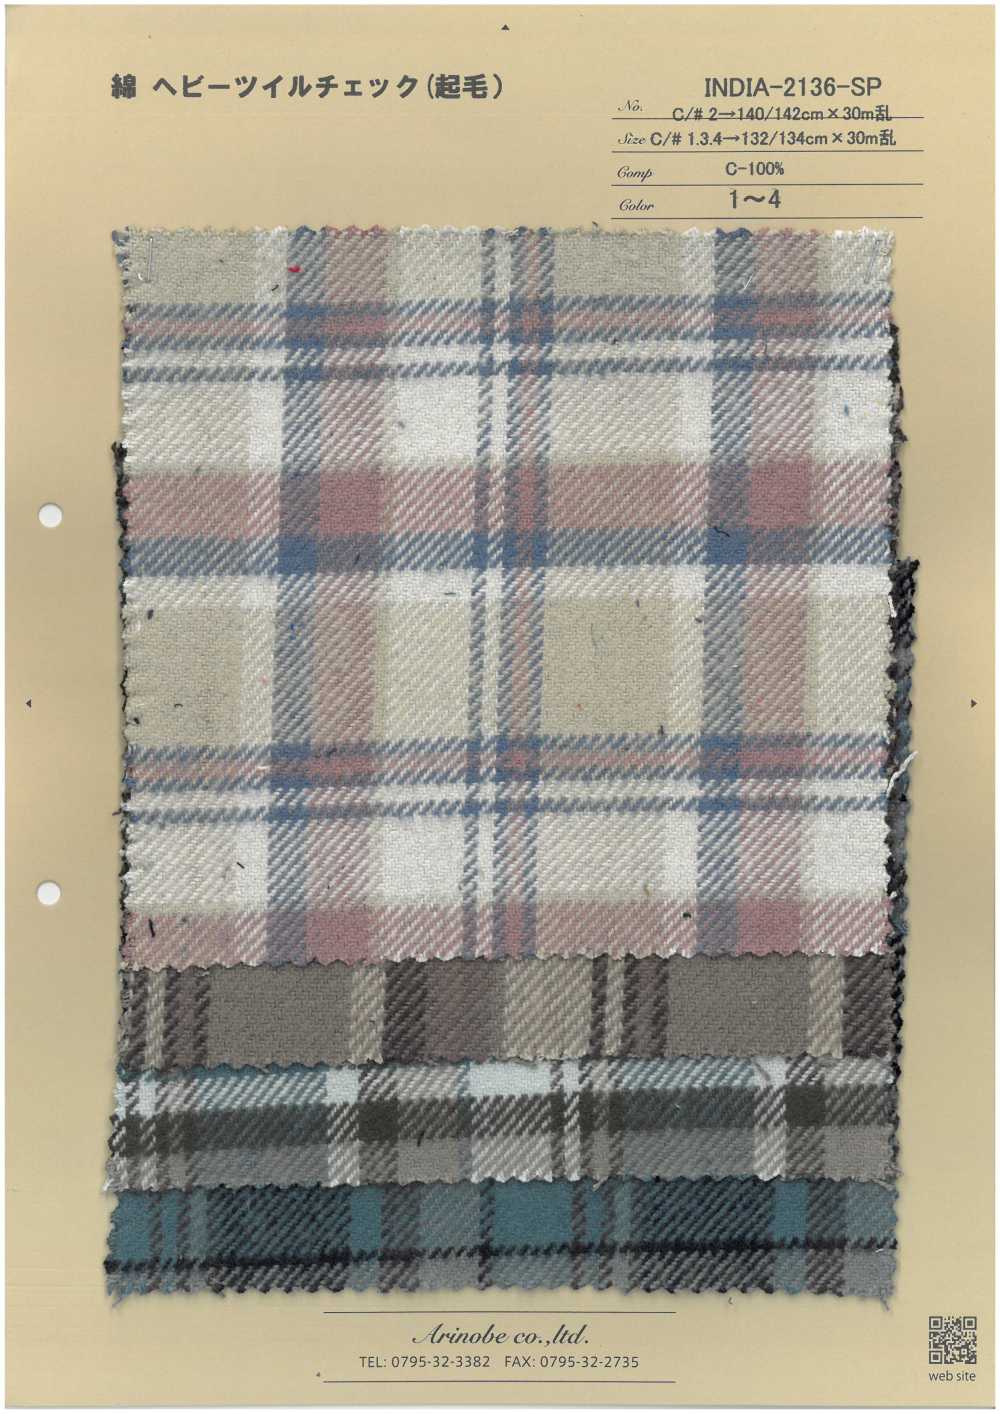 INDIA-2136-SP Baumwollschwerer Twill Karo (Fuzzy)[Textilgewebe] ARINOBE CO., LTD.